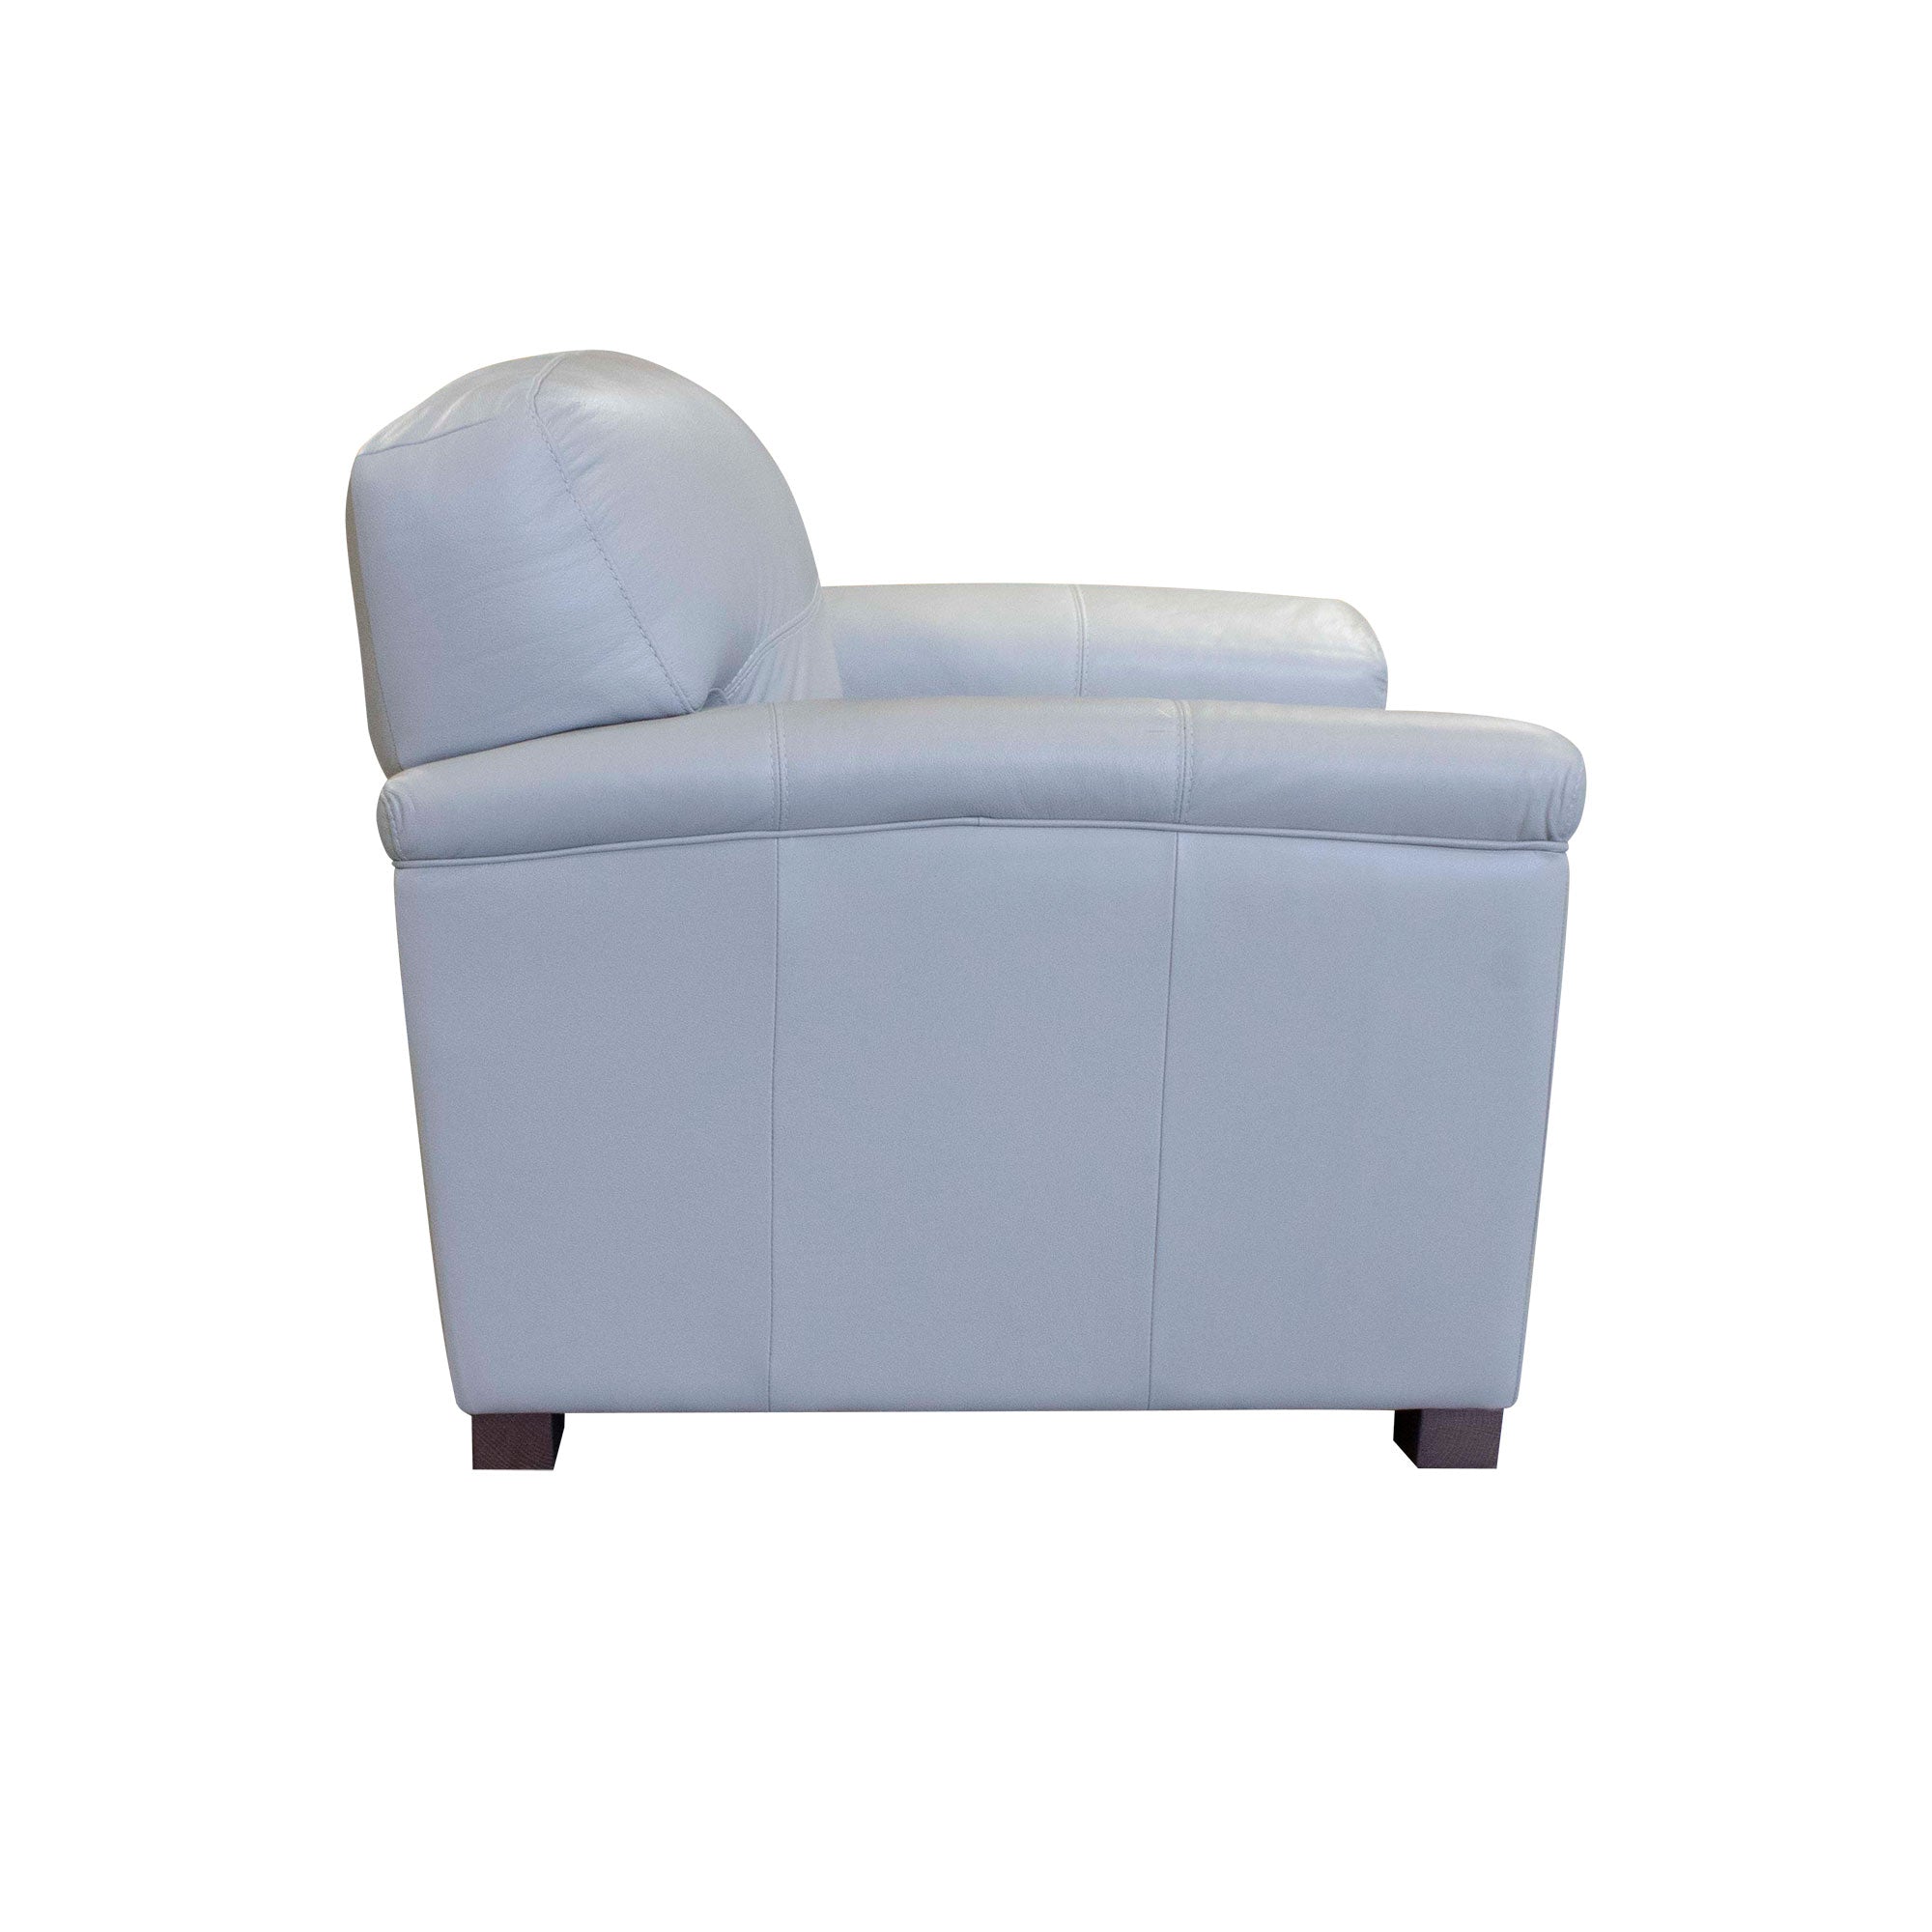 Garner Chair